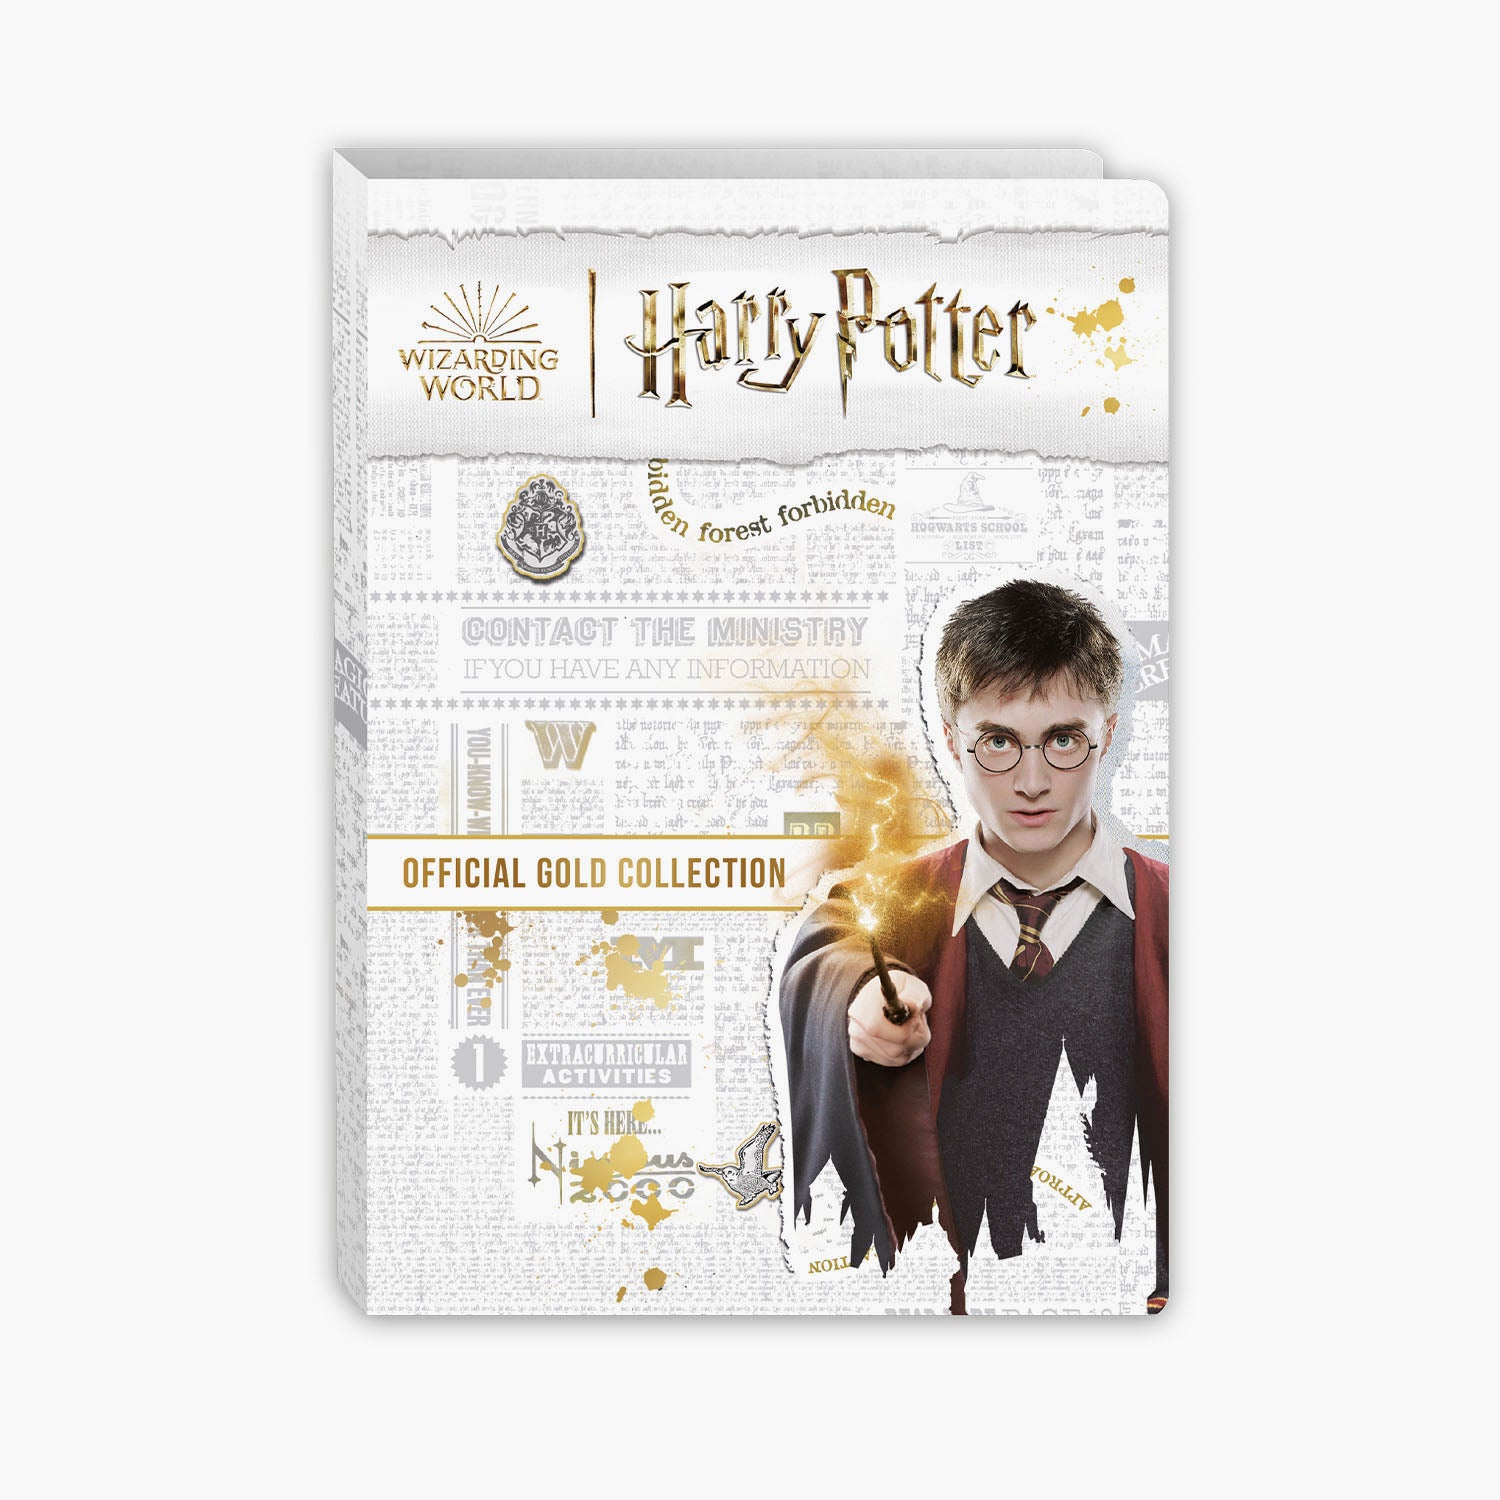 La collection officielle de pièces en or massif Harry Potter